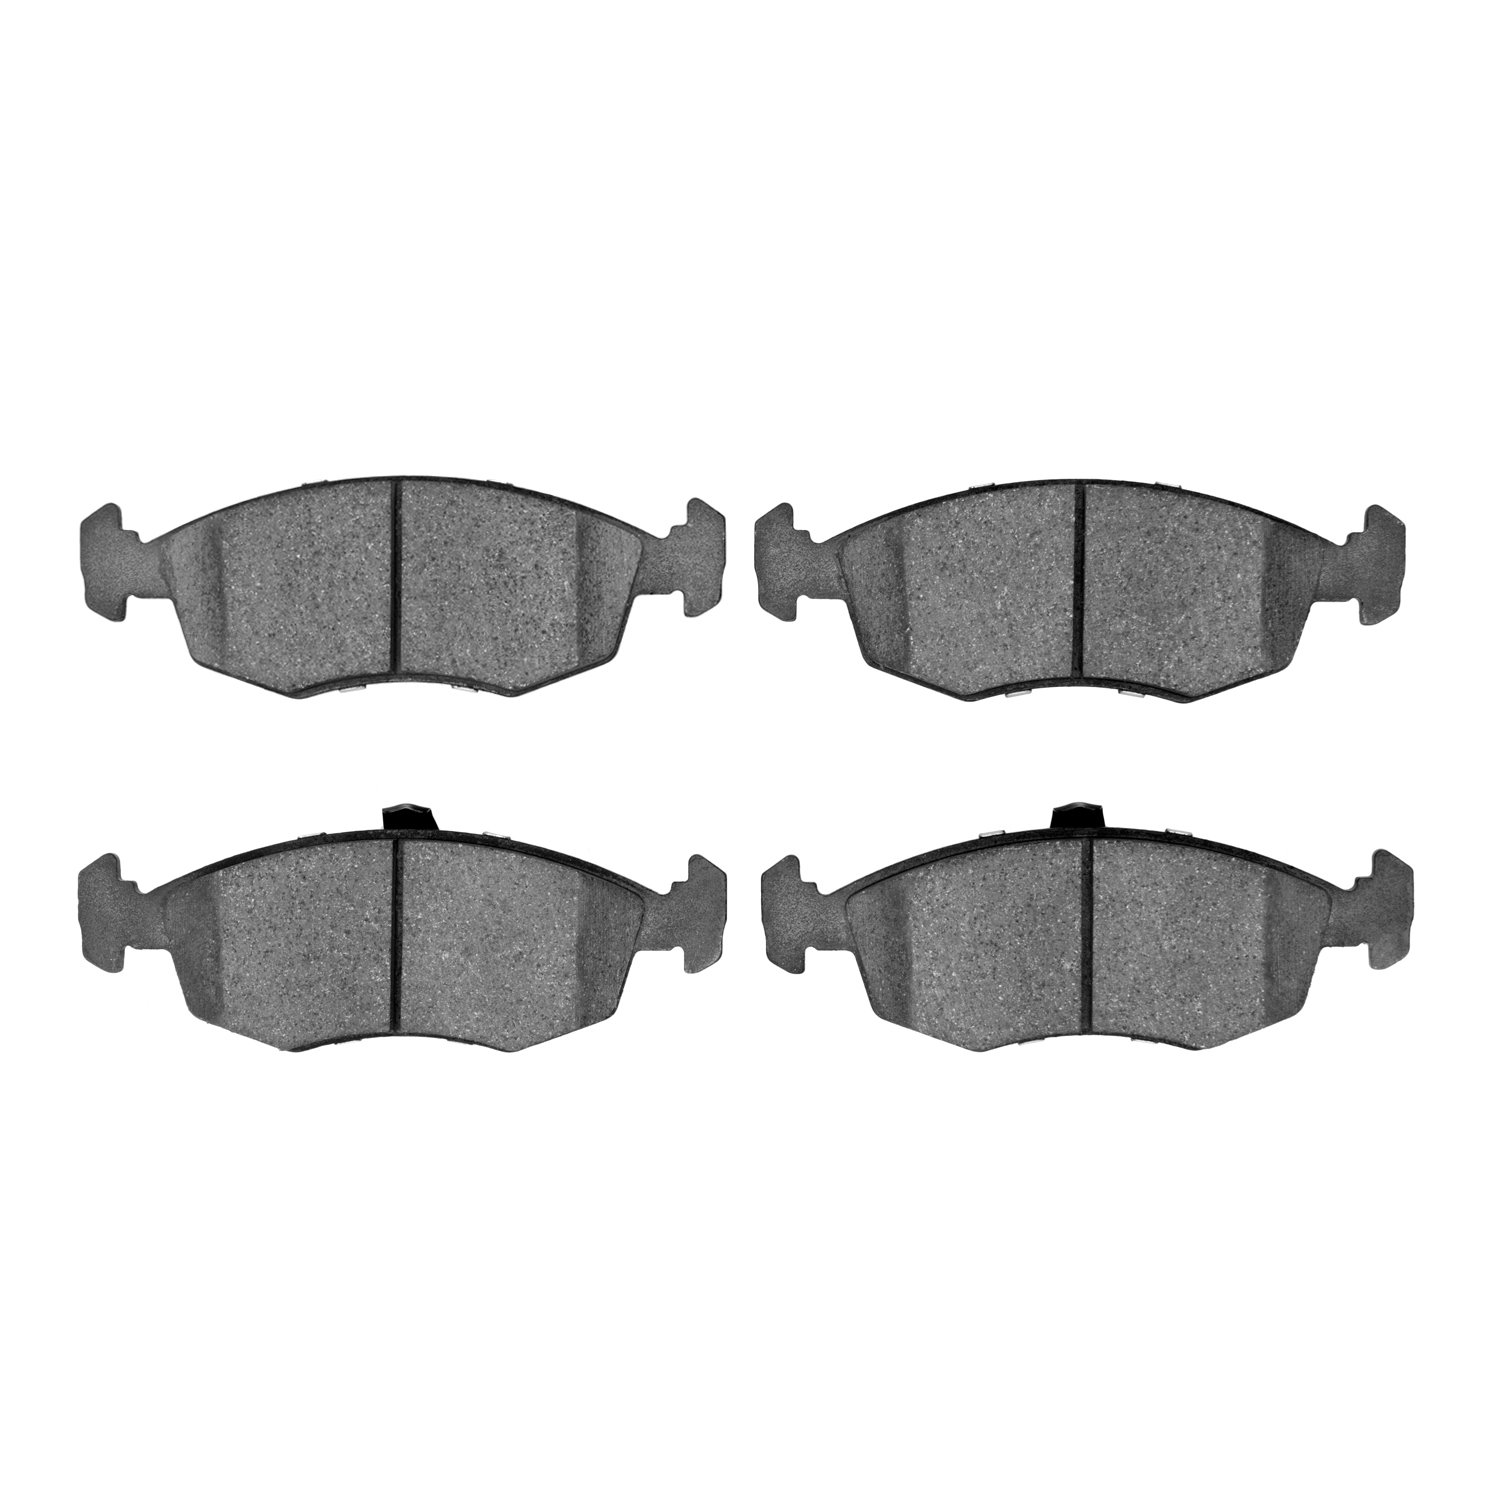 Ceramic Brake Pads, 2015-2017 Mopar, Position: Front